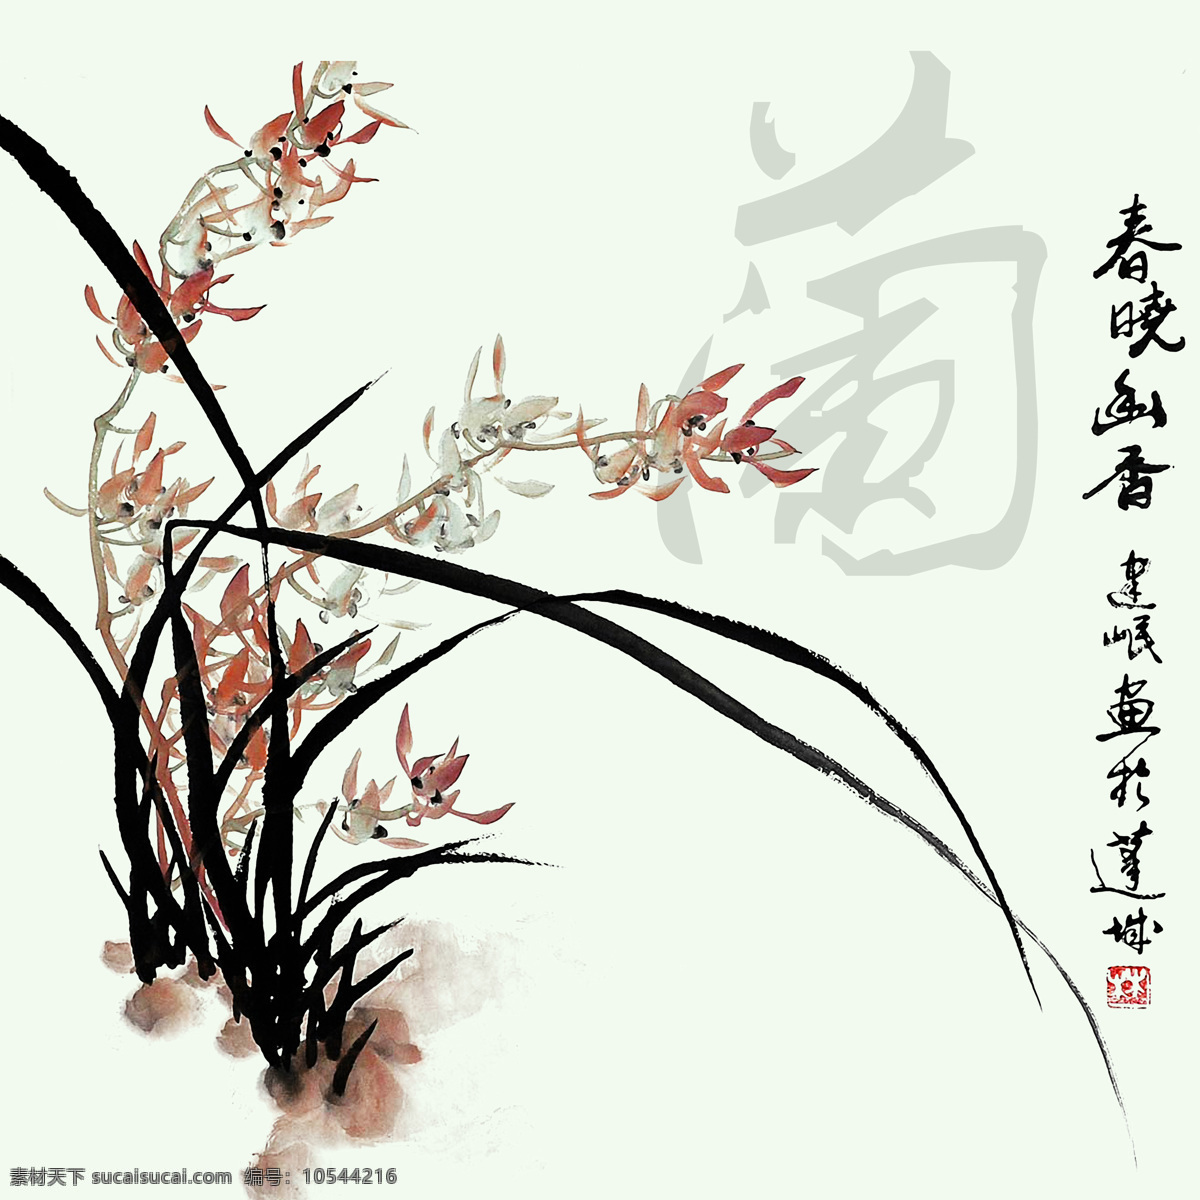 中国话 梅兰竹菊 中国风 中国画 水墨画 油画 装饰画 风景画